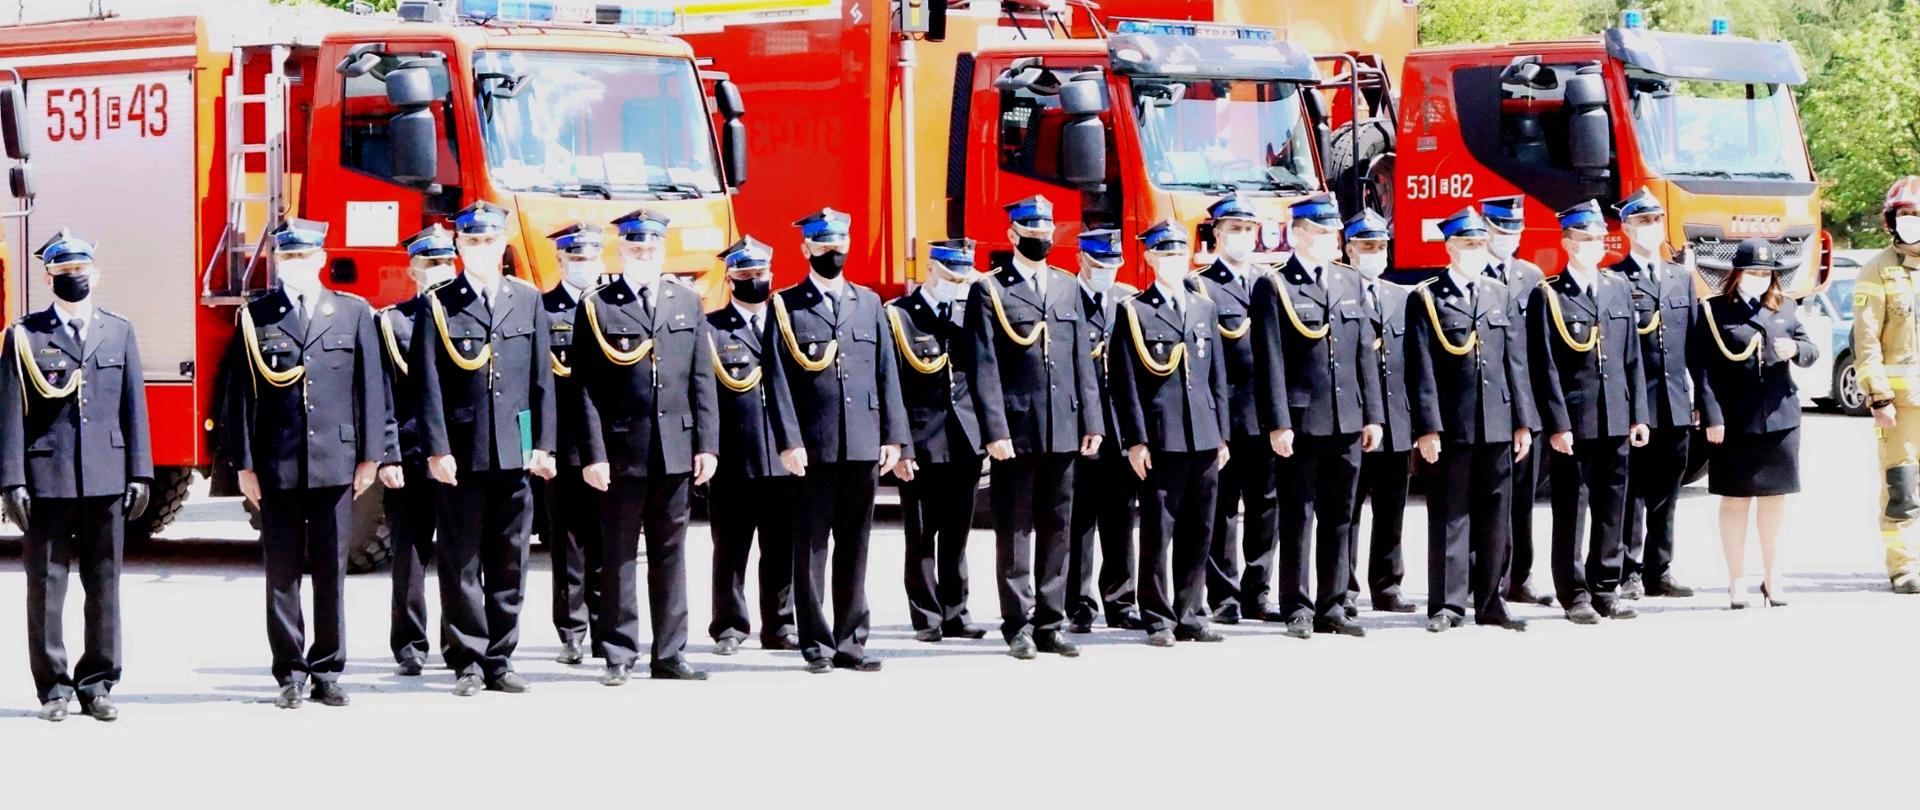 Na zdjęciu widać strażaków stojących w szyku podczas akademii z okazji dnia strażaka. W tle wozy strażackie